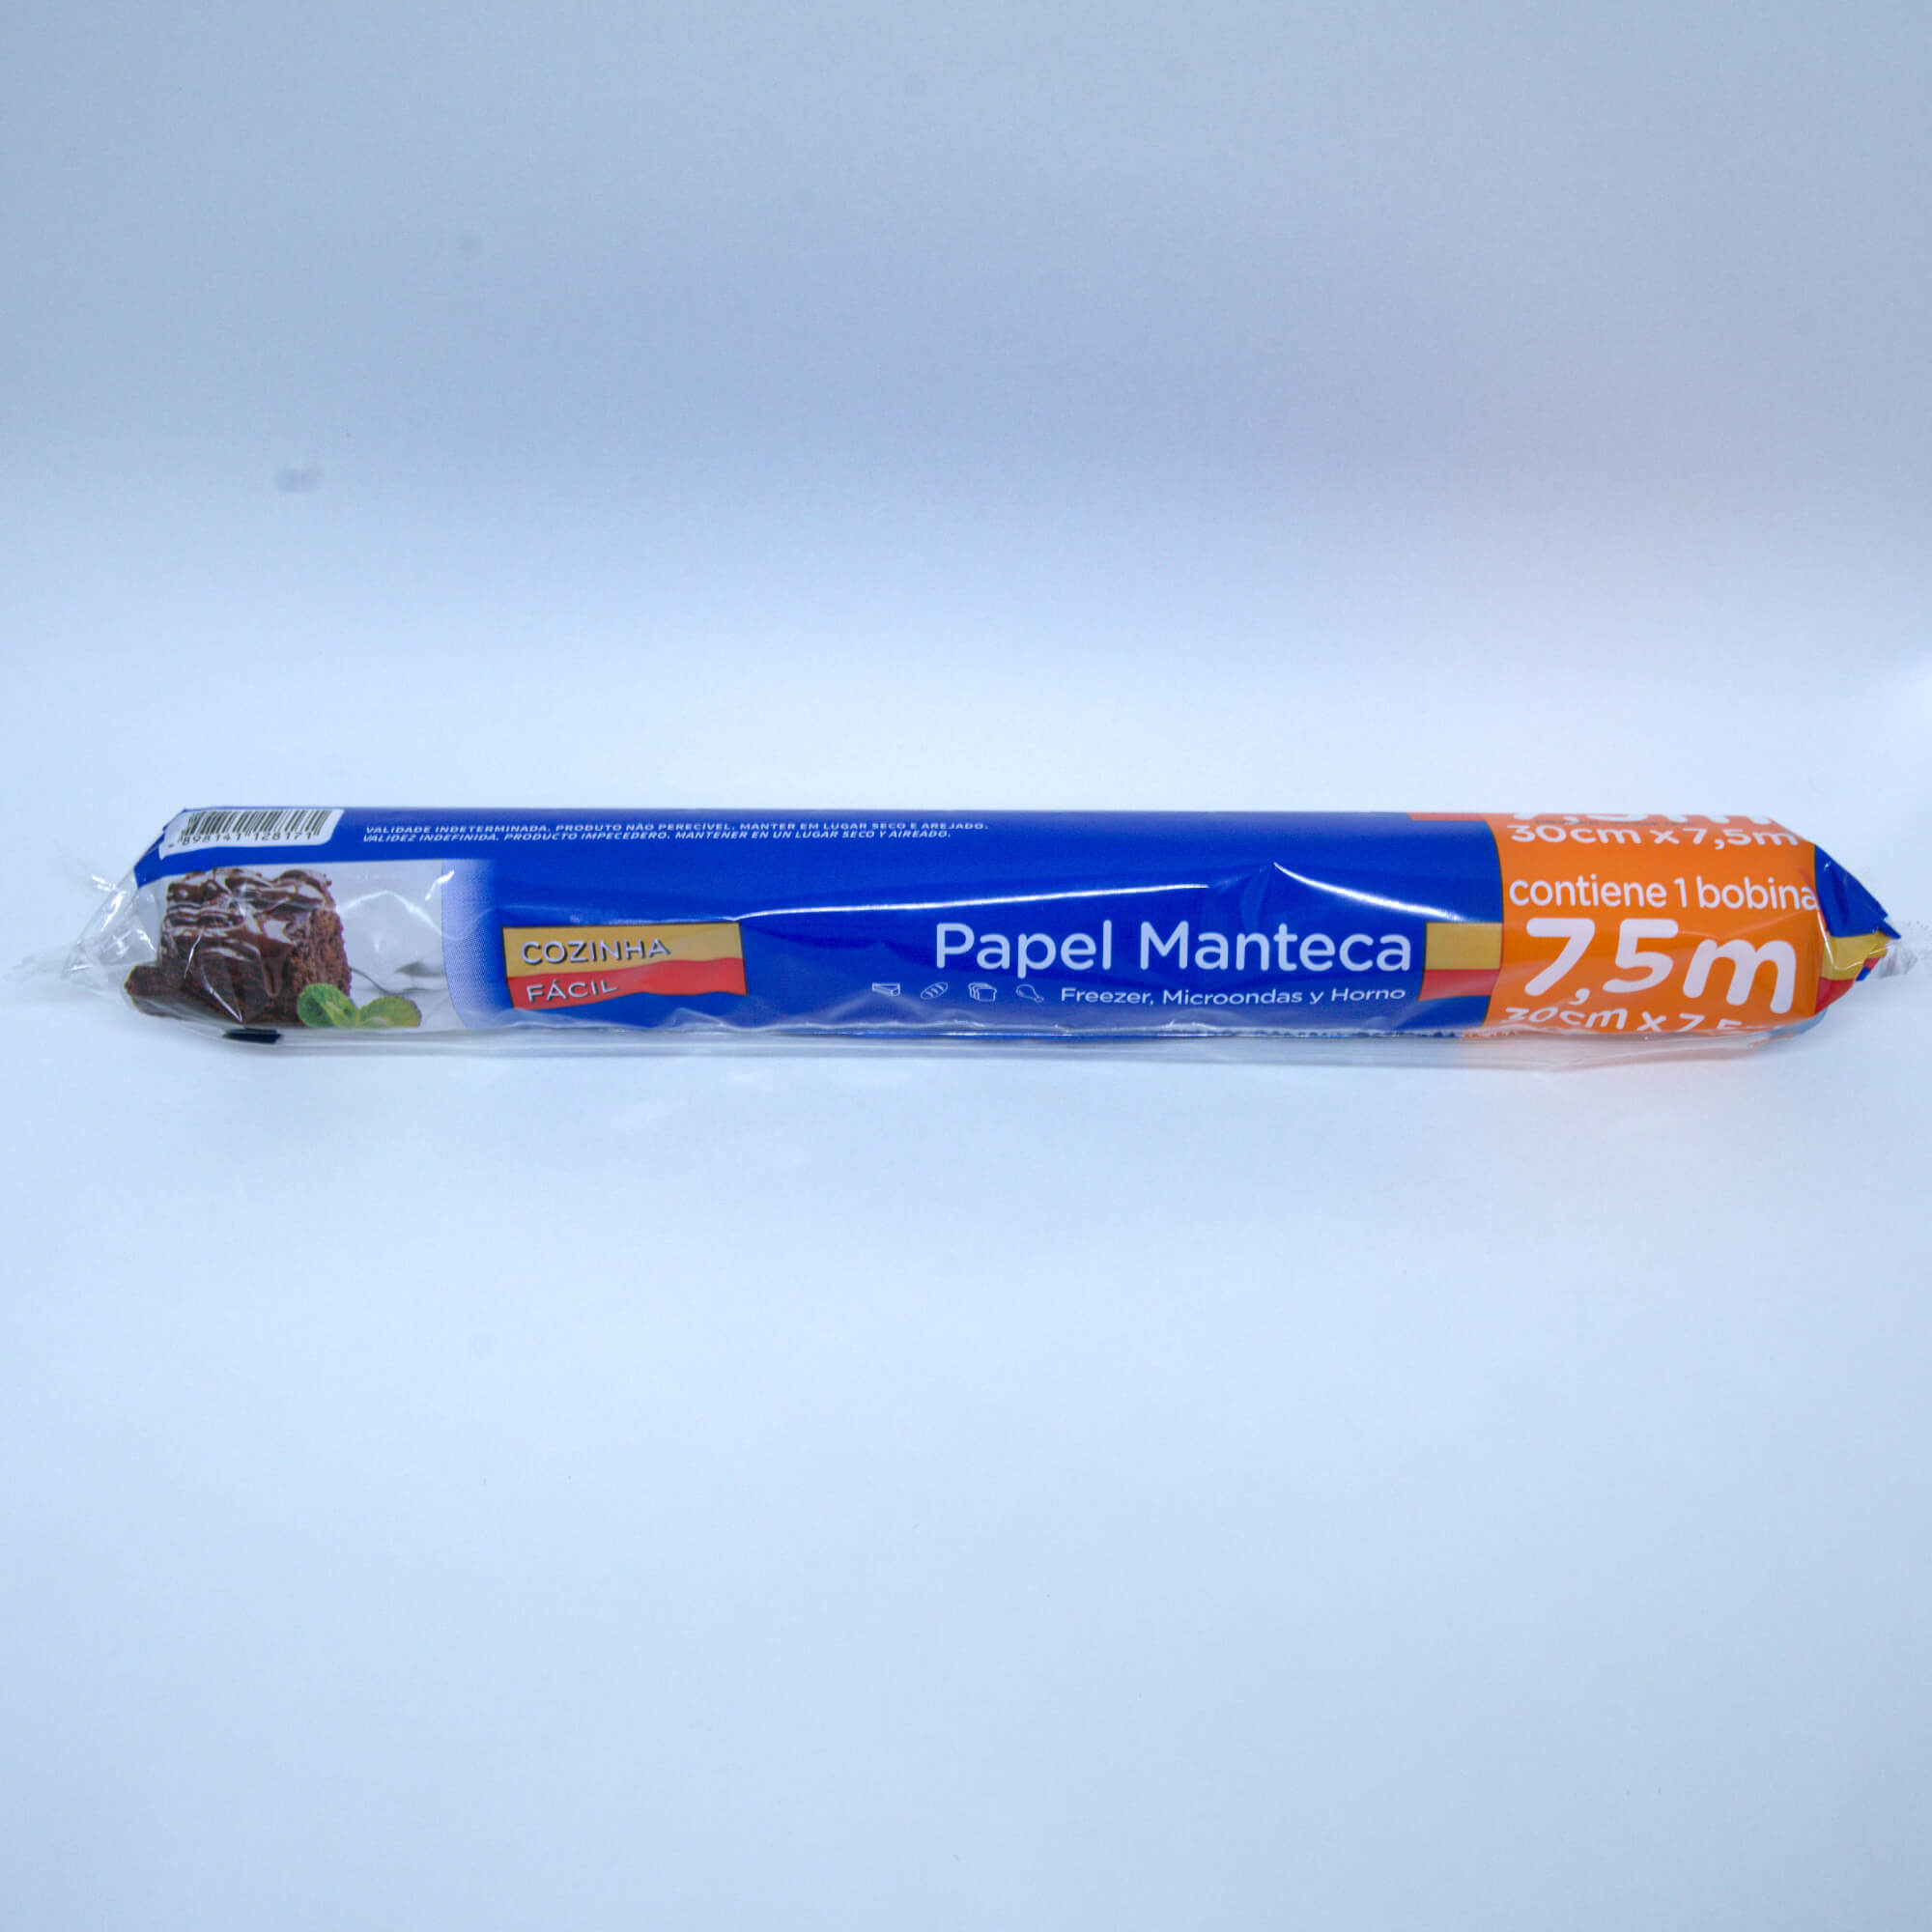 papel manteiga - 30cm x 7,5cm - BrasilPack